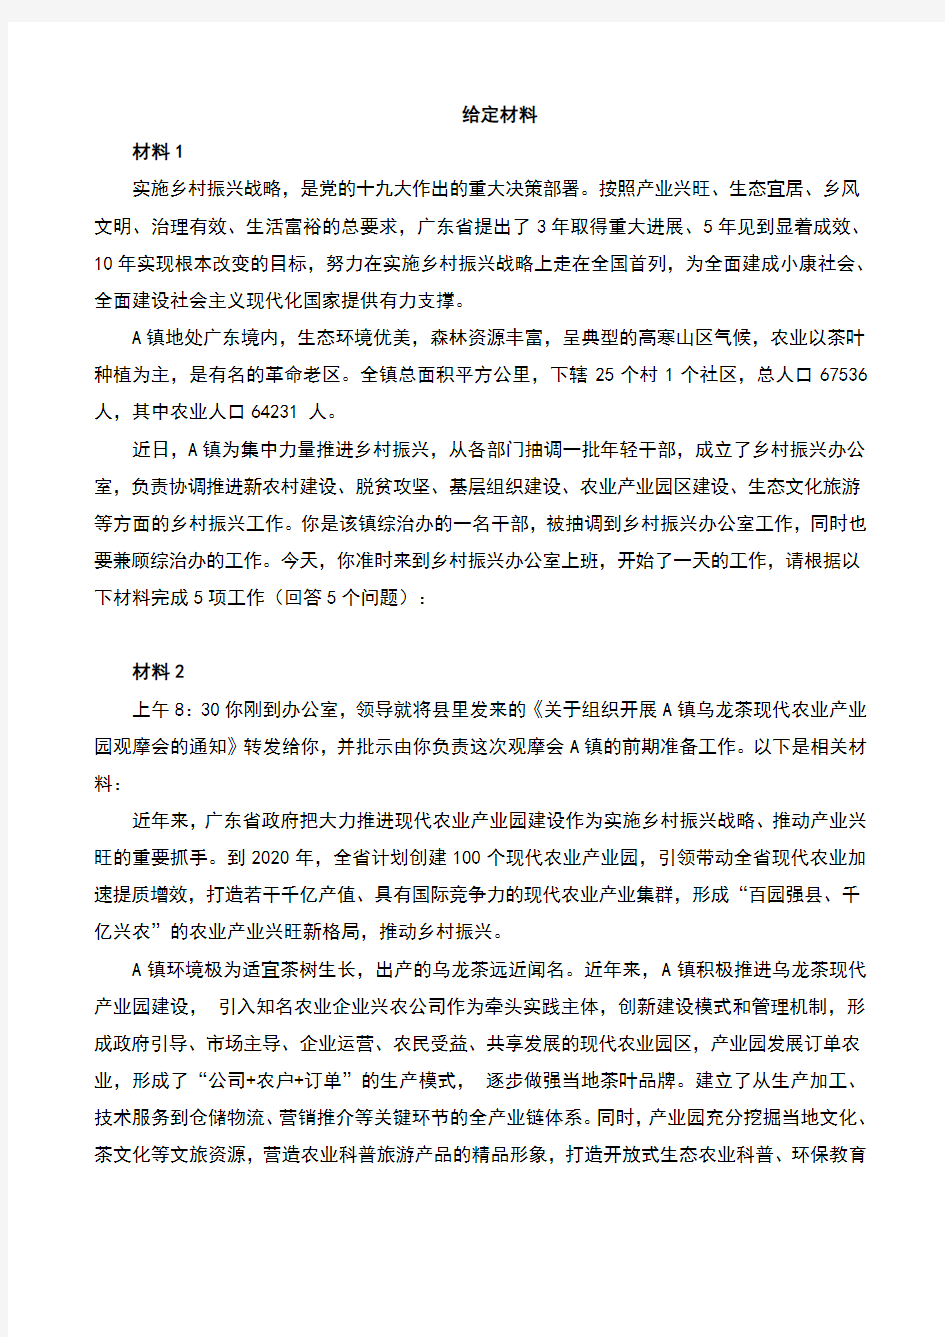 2019年广东省公考《申论》真题及答案